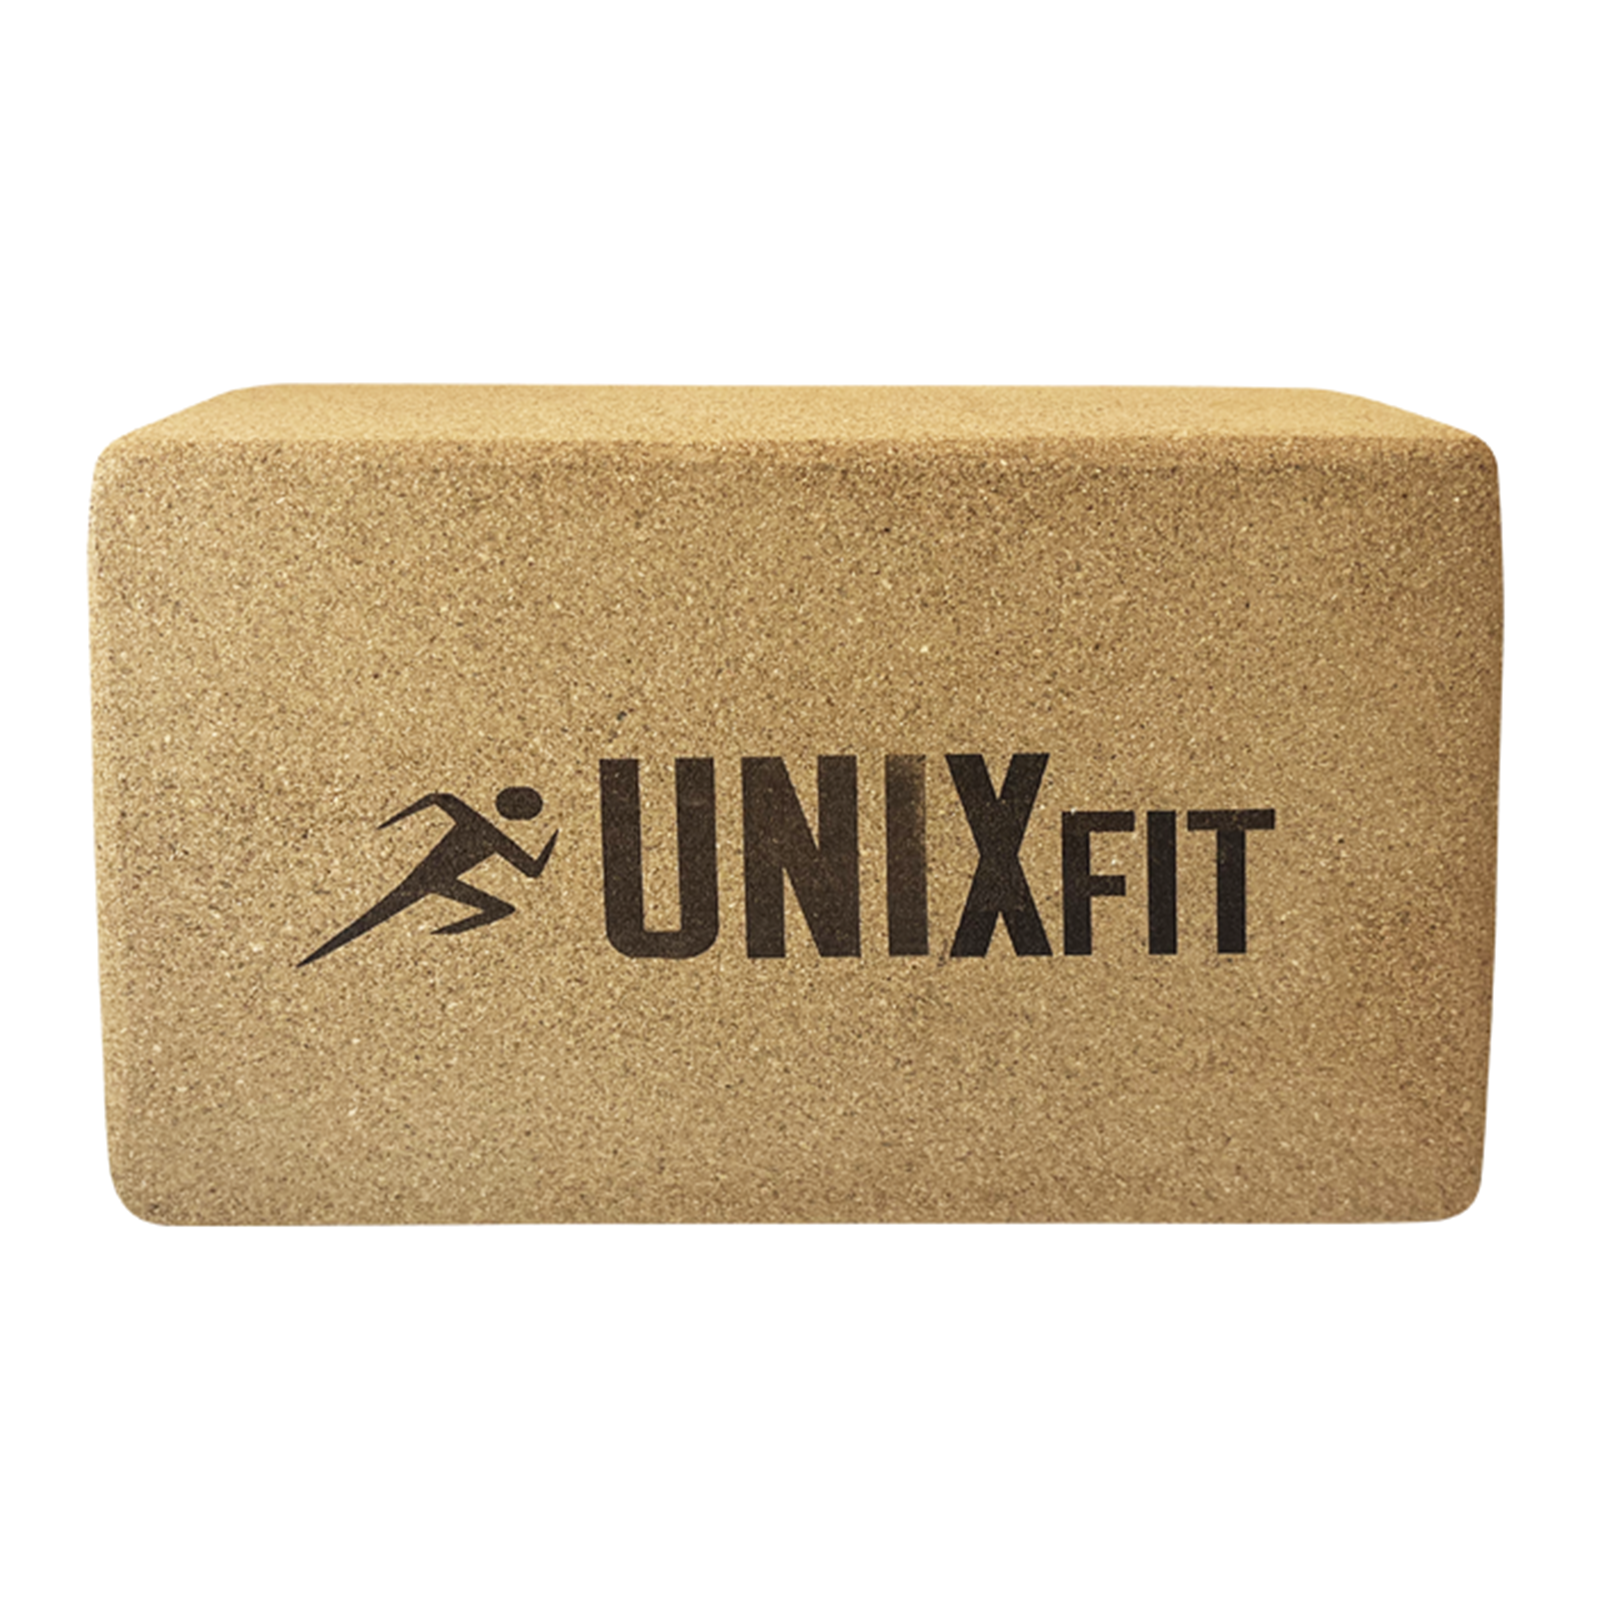 Блок для йоги и фитнеса UNIX Fit пробковый 22.5 х 15 х 7.5 см, 1 шт UNIX Fit™ Блоки для йоги и фитнеса